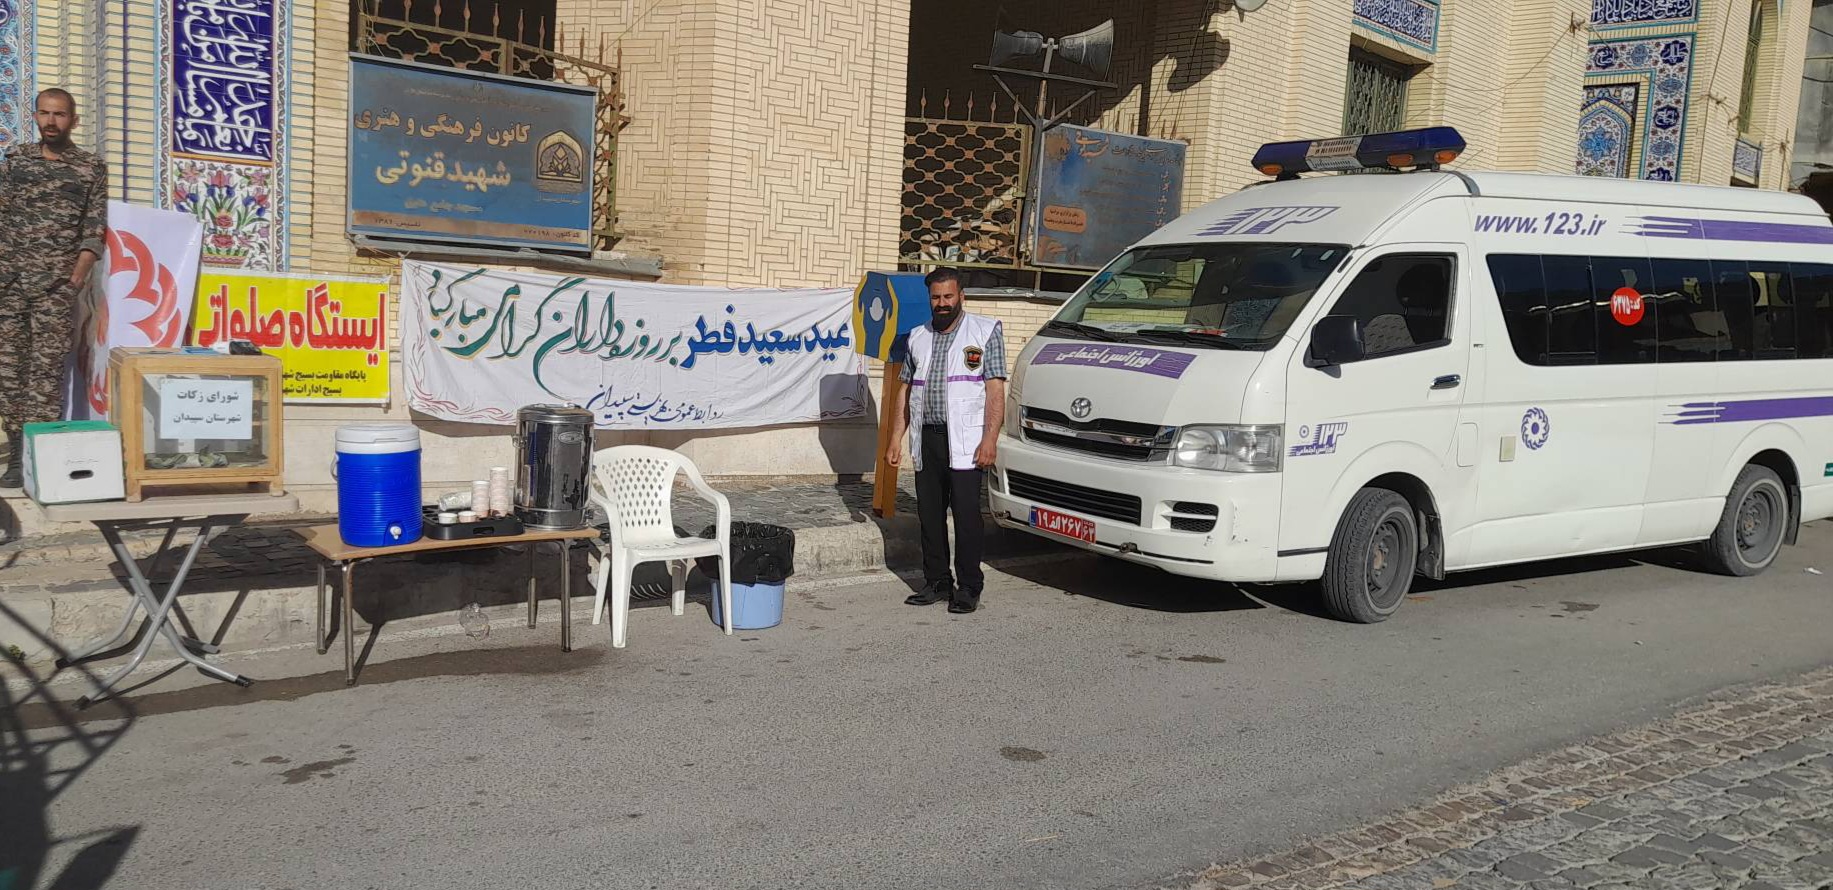 سپیدان | برپایی ایستگاه صلواتی و استقرار پایگاه بهزیستی سپیدان در روز عید سعید فطر